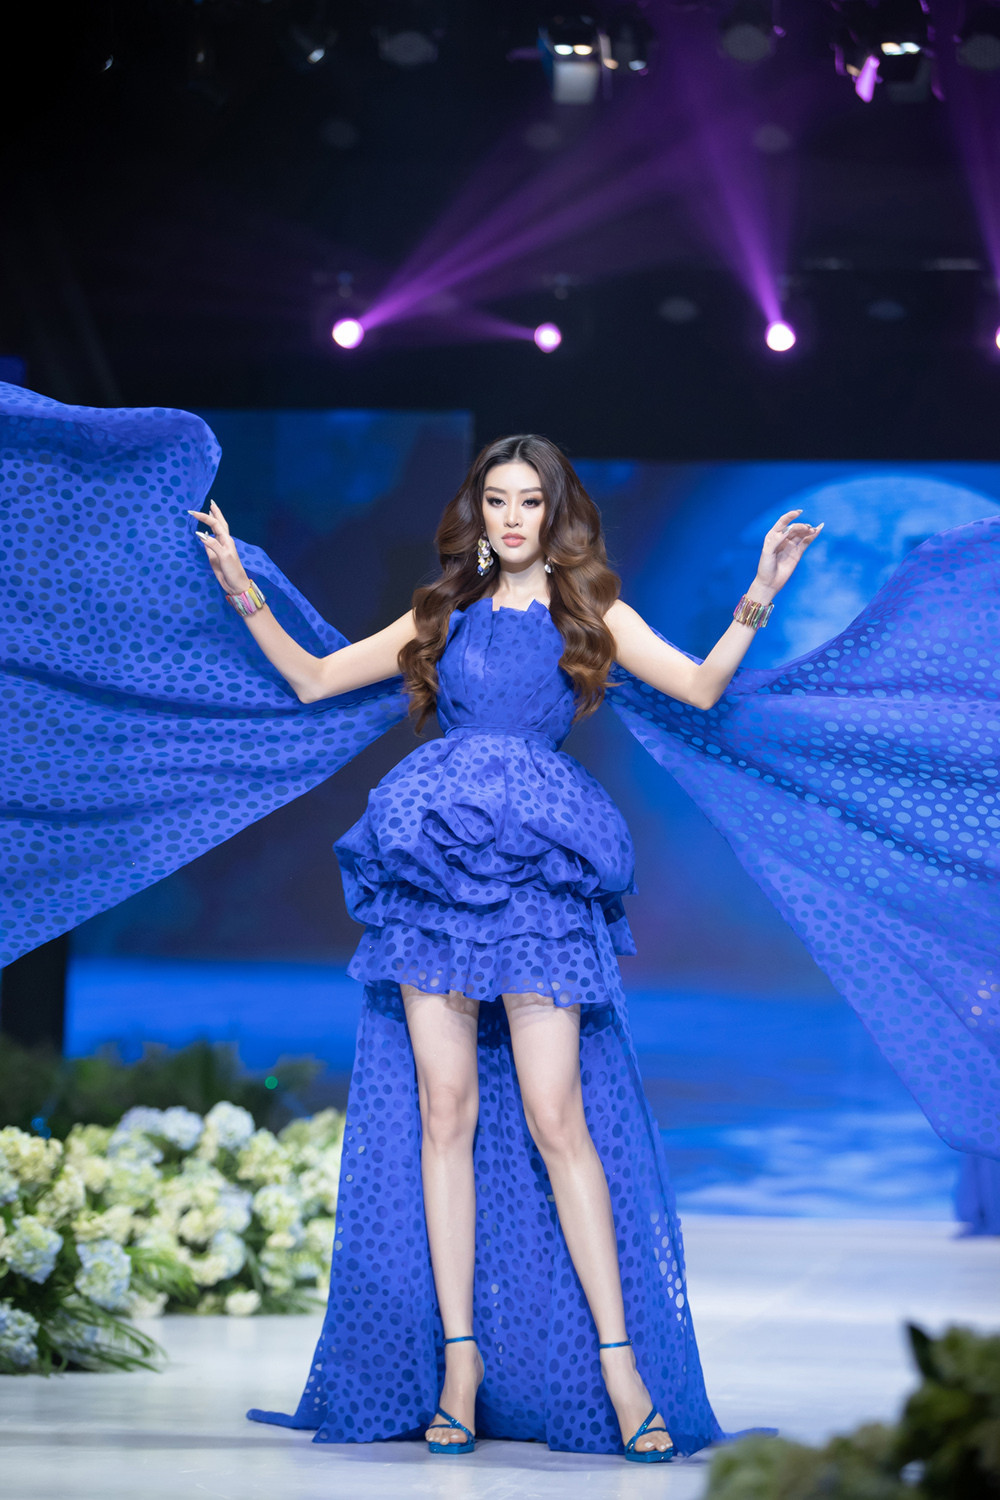 Hoa hậu Khánh Vân tái xuất sàn diễn thời trang với vị trí vedette - 6